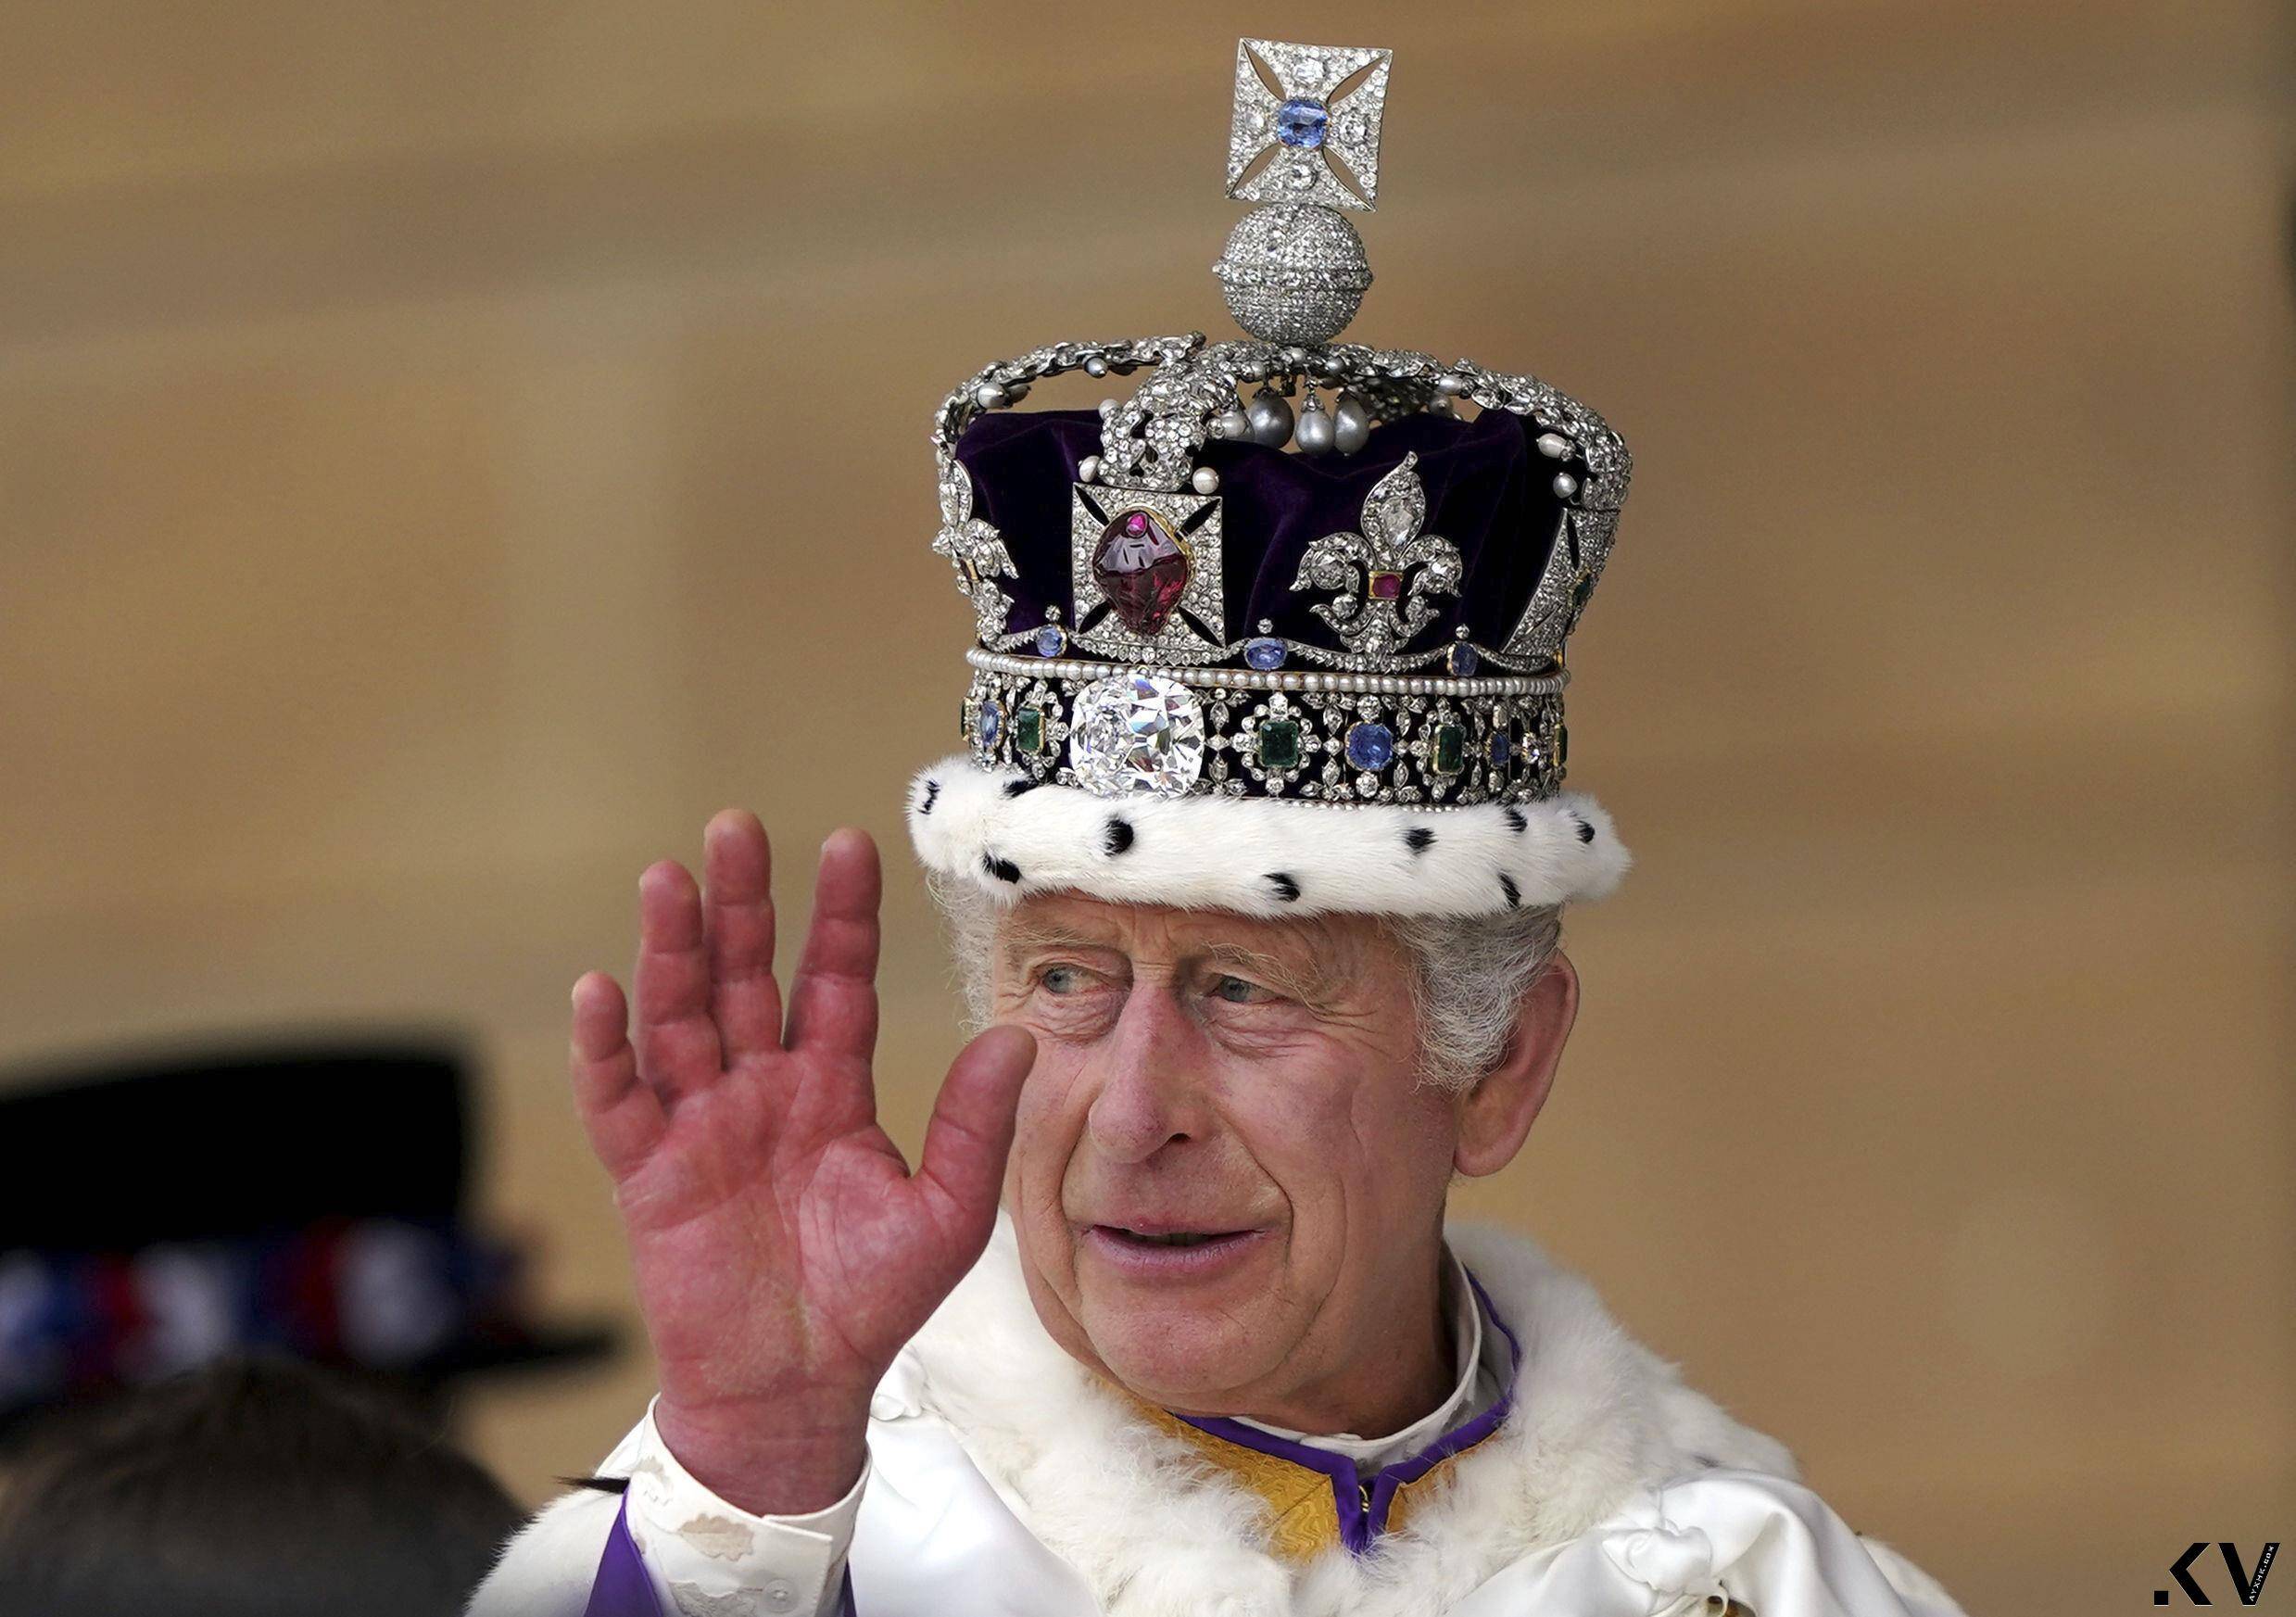 英国王加冕王冠一生只戴一次　礼成换戴闪耀317.4克拉巨钻冠冕 时尚穿搭 图4张